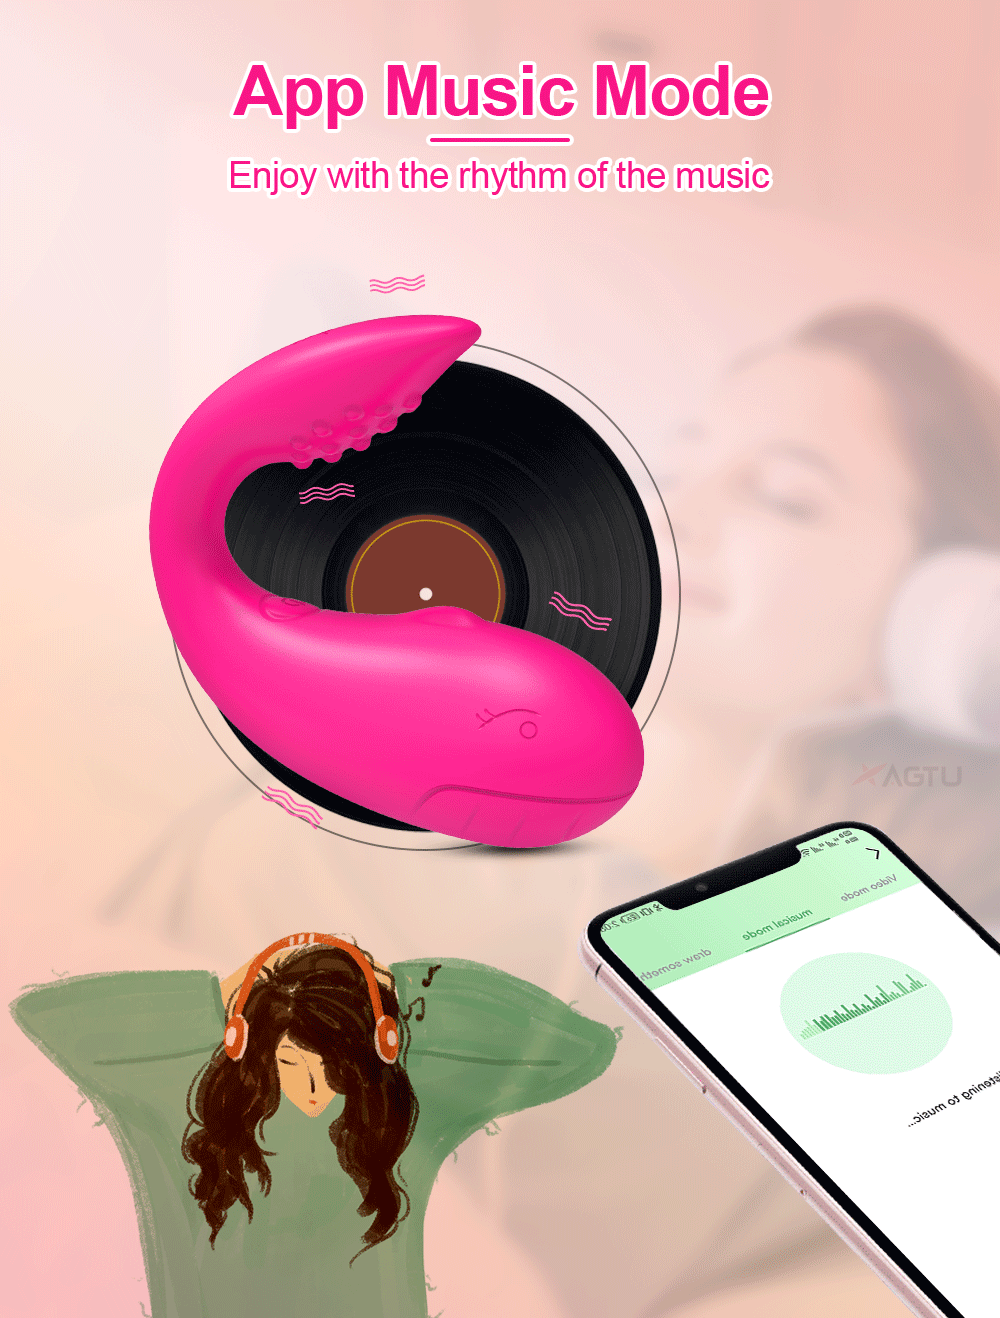 Sỉ Trứng rung cá heo Love Spouse kết nối bluetooth điều khiển qua app TD042 giá rẻ